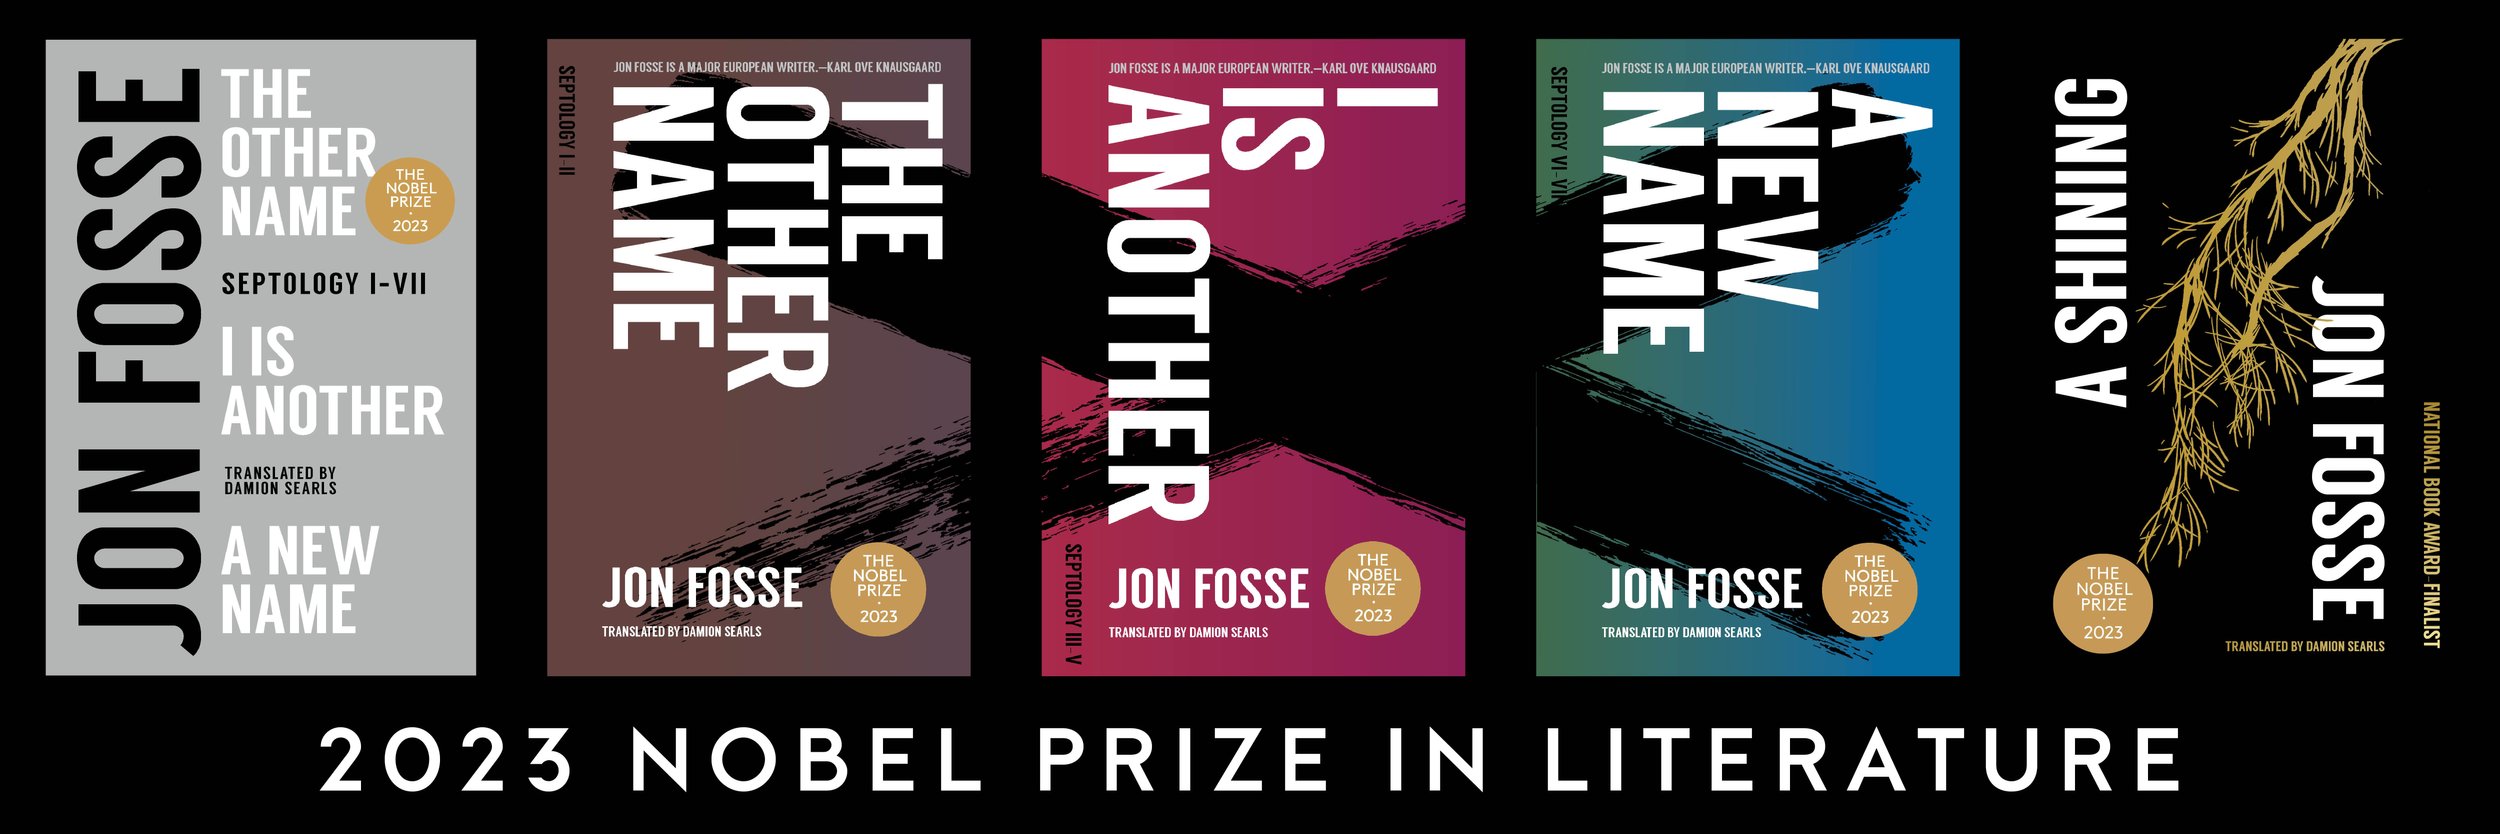 Jon Fosse Nobel Prize